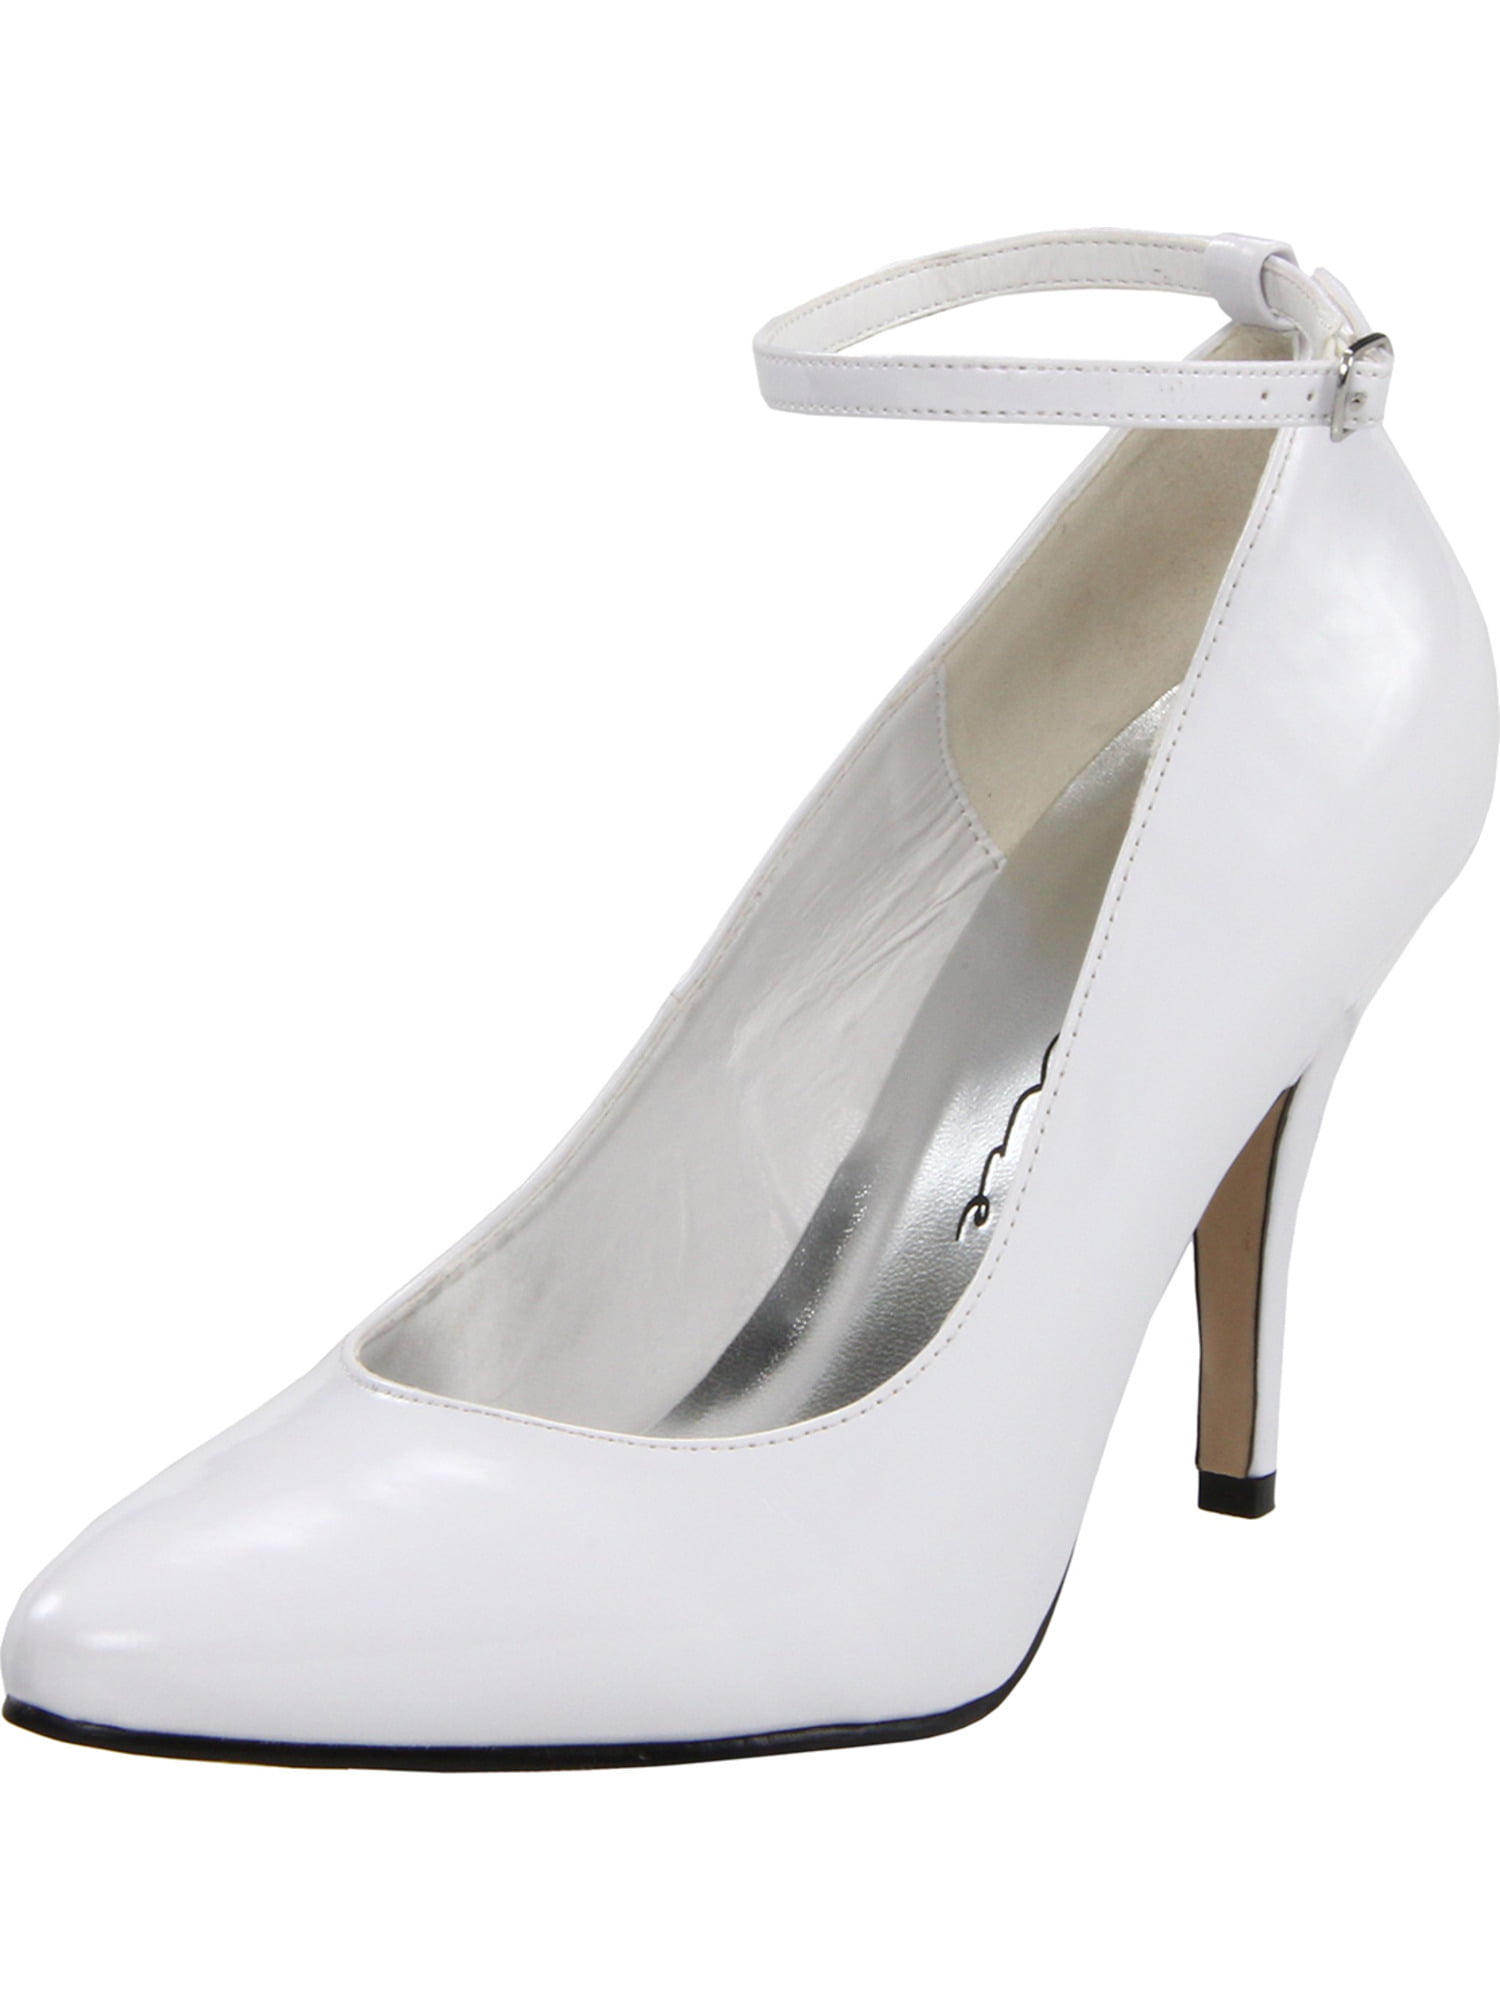 white heels walmart